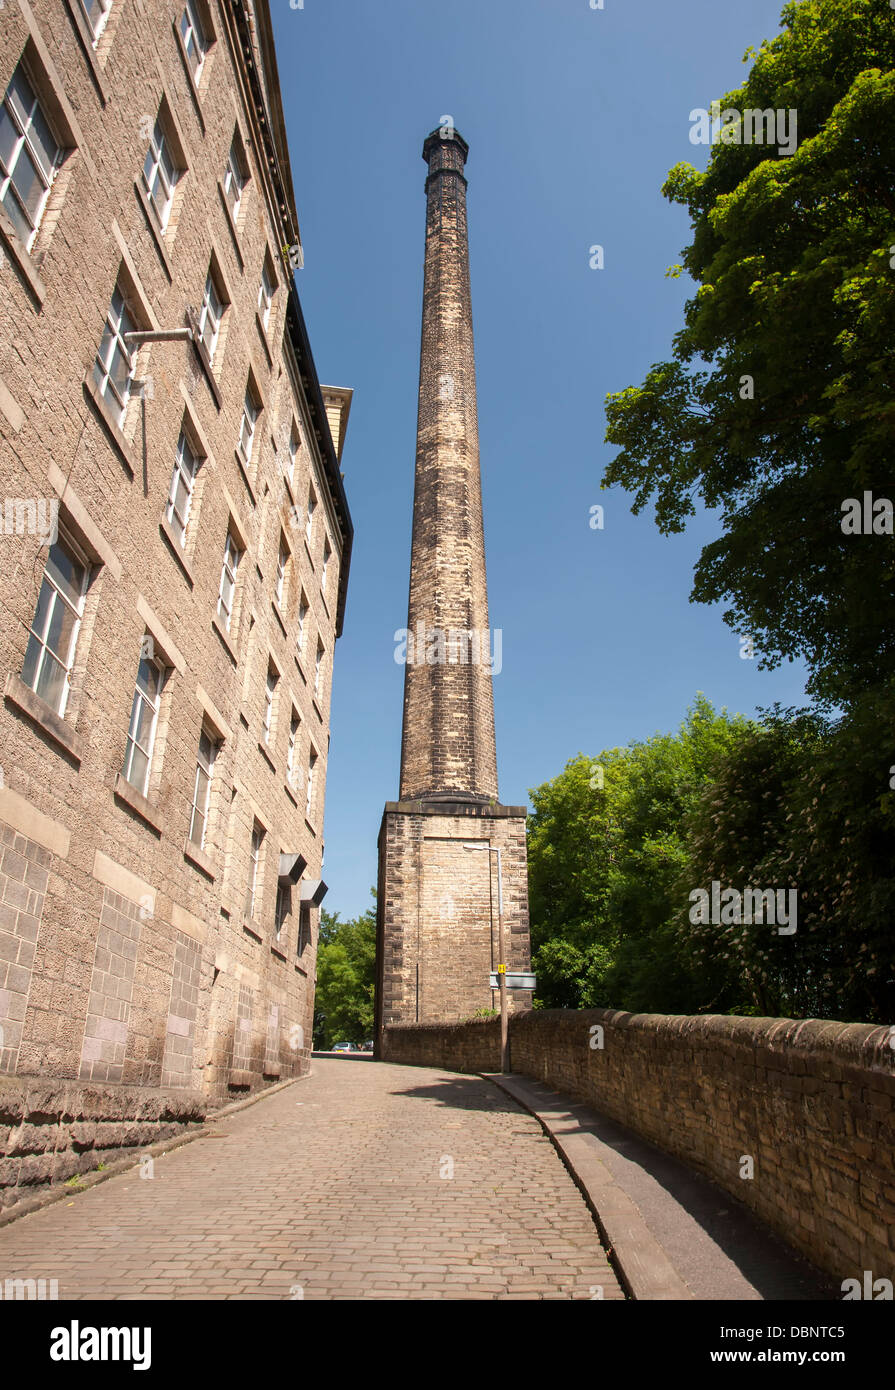 Une imposante cheminée usine victorienne et chaussée pavée à Halifax, West Yorkshire Banque D'Images